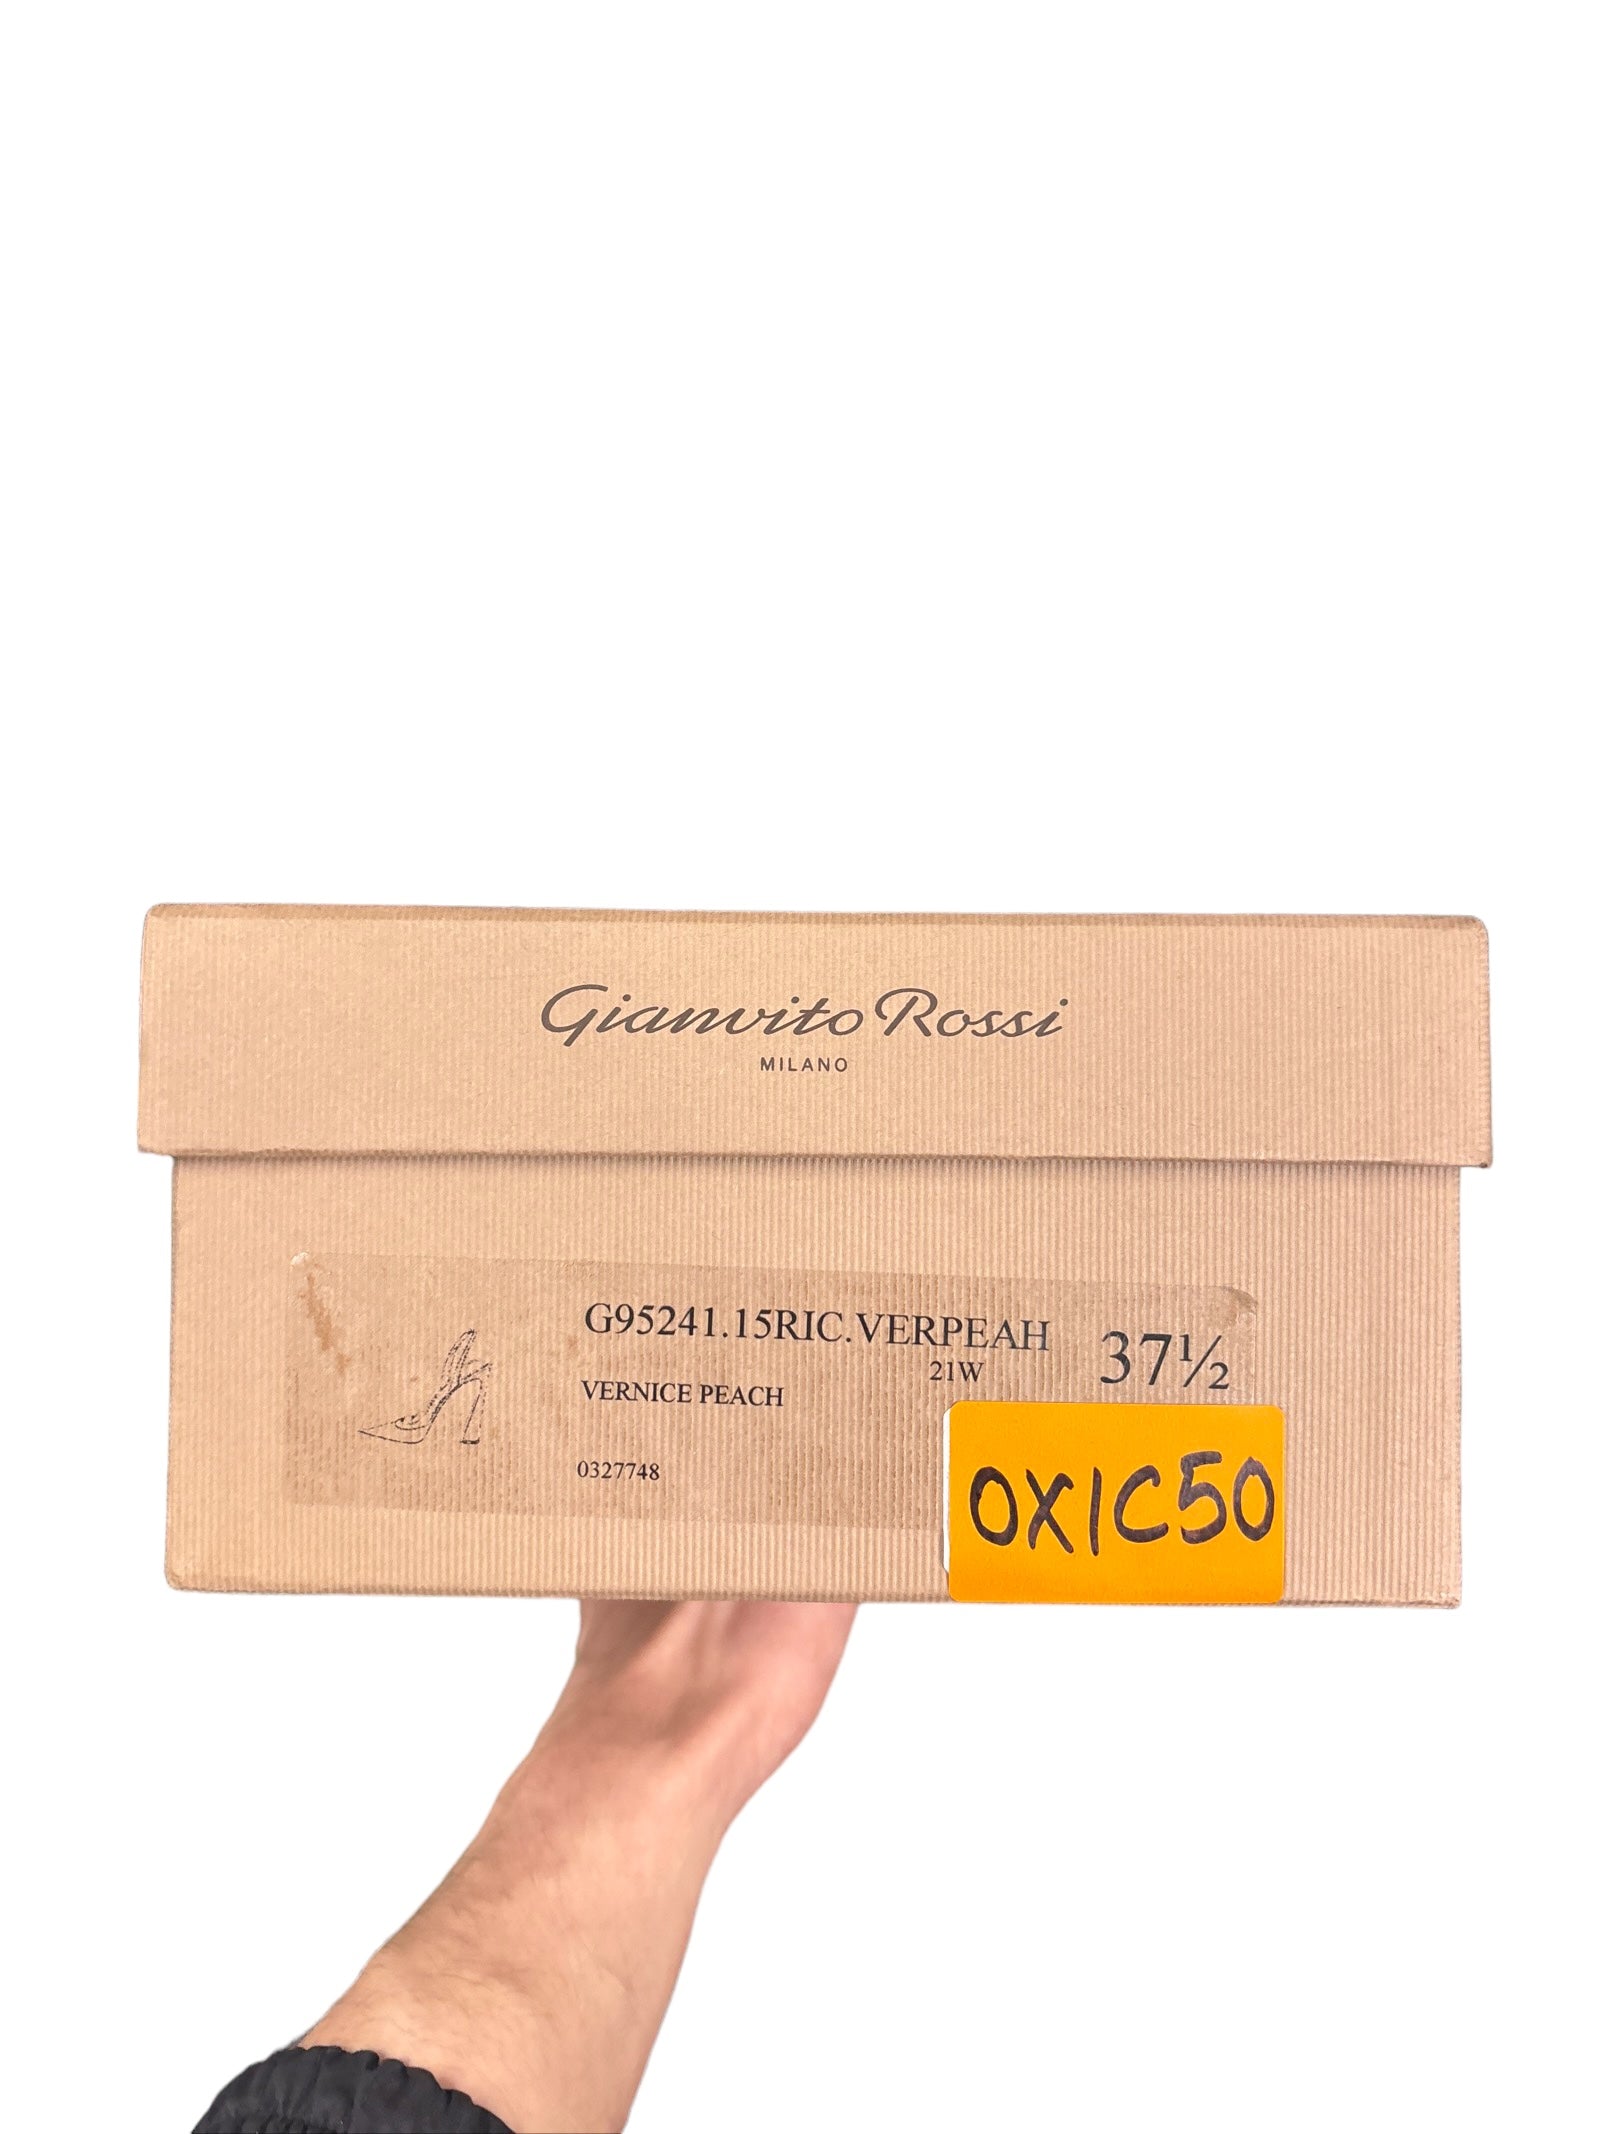 Gianvito Rossi Milano 105m Patent Leather Pumps Peach